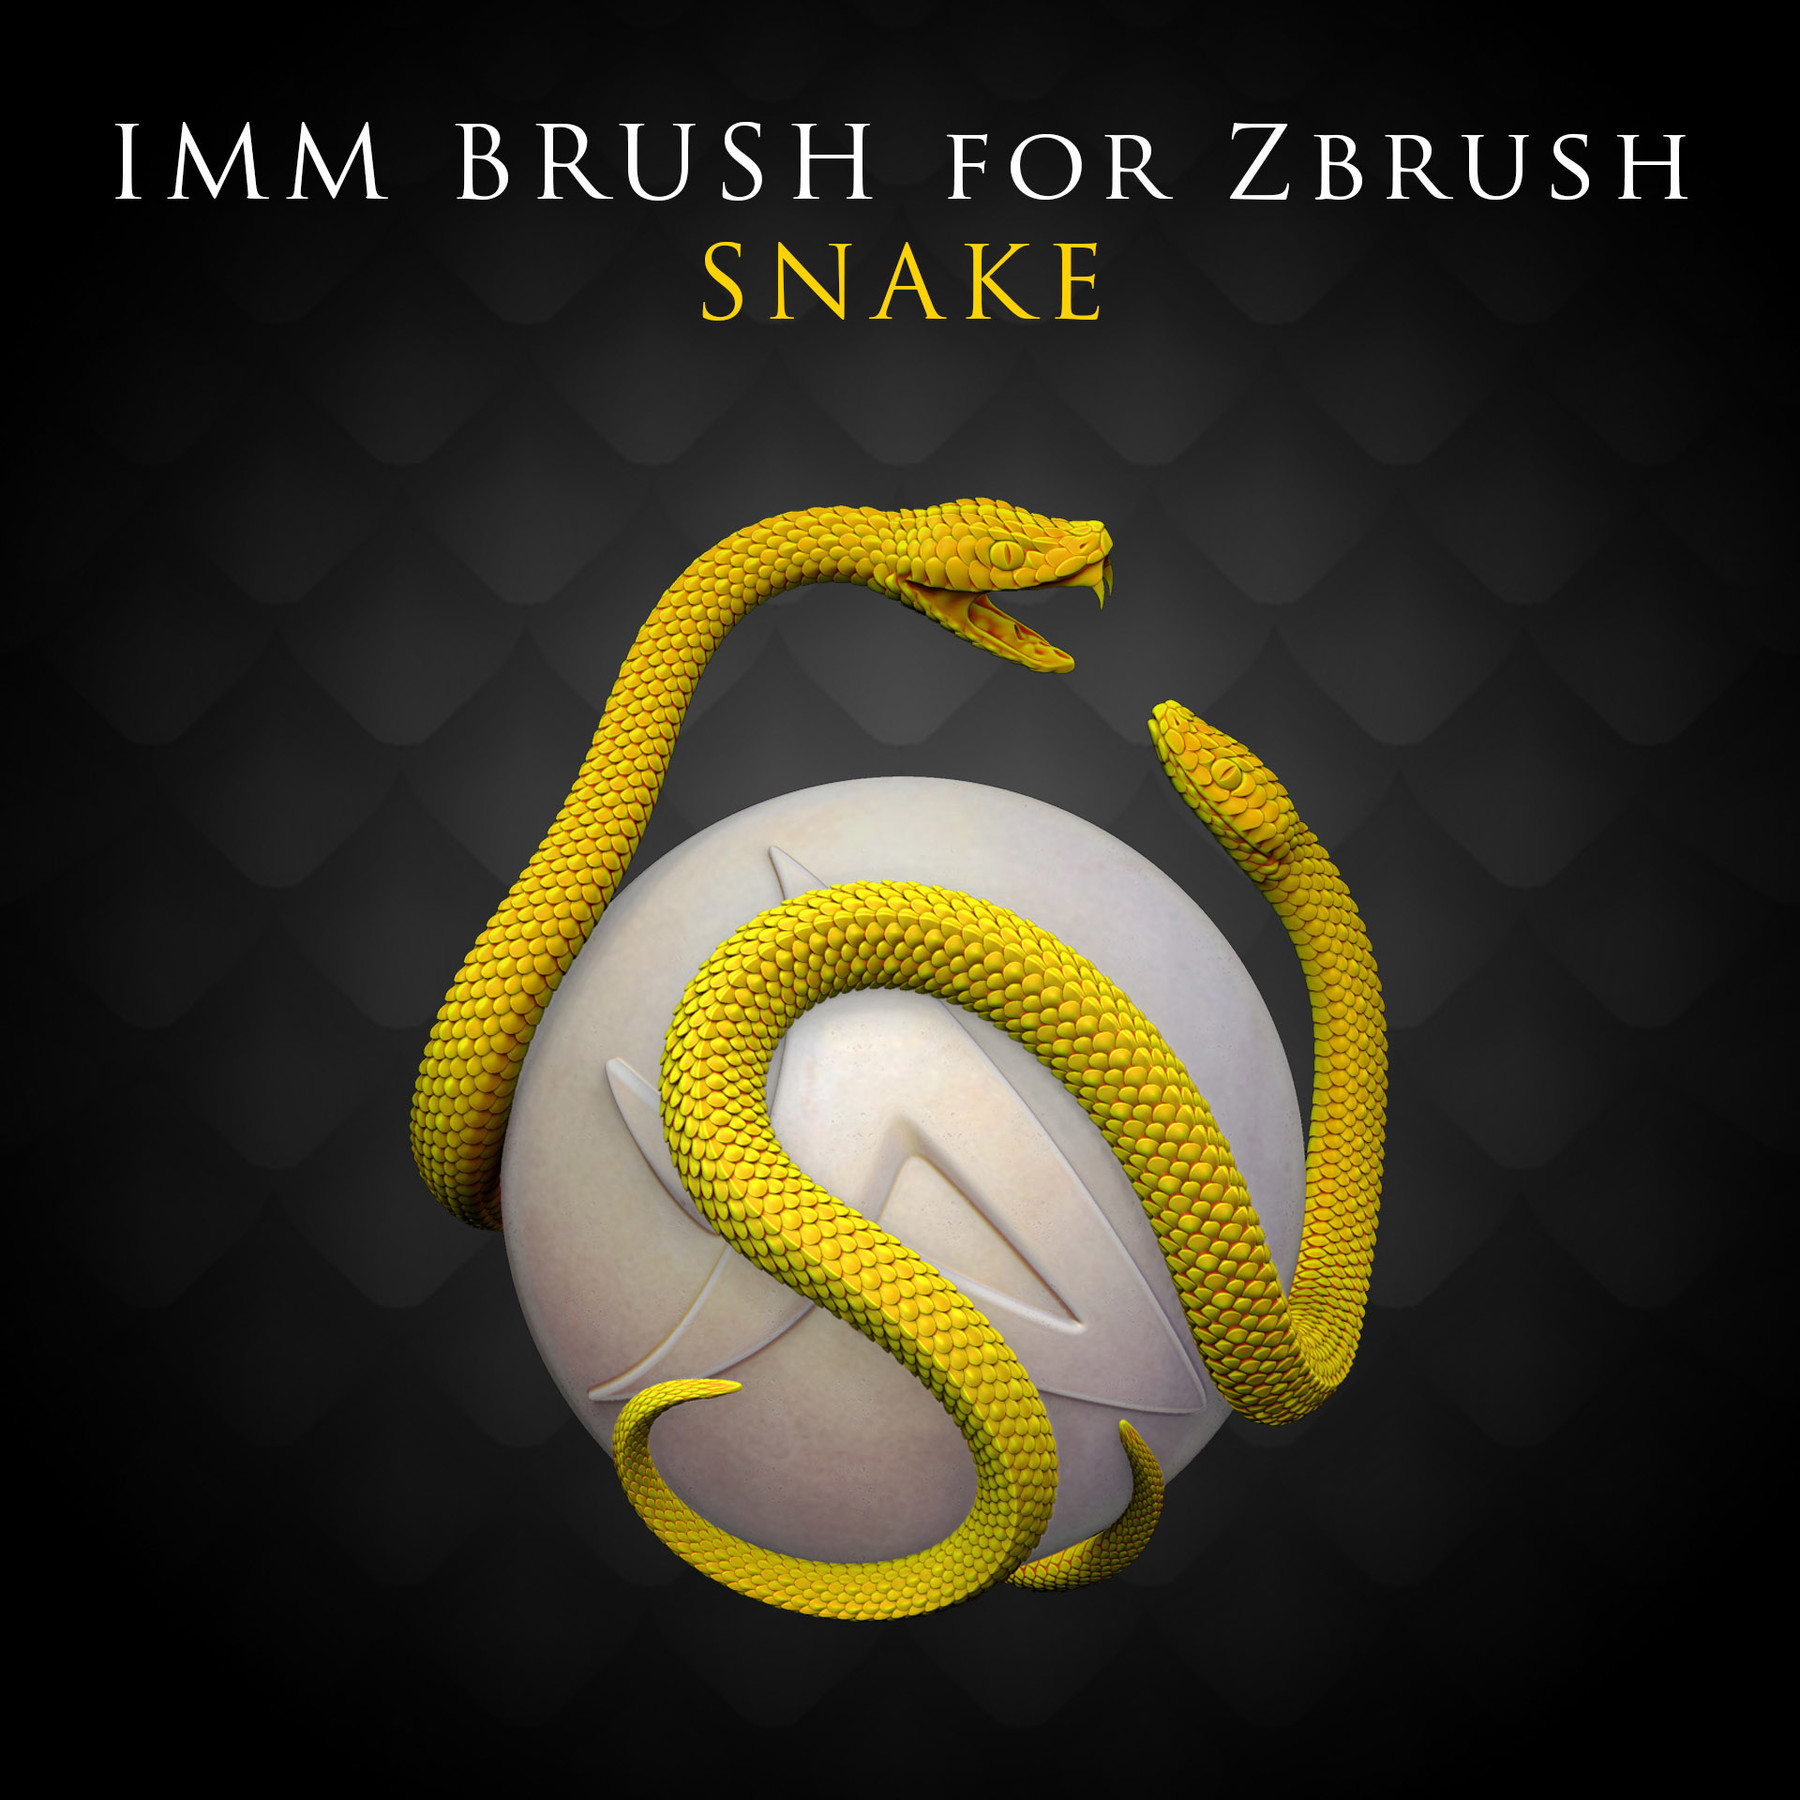 zbrush snake brush